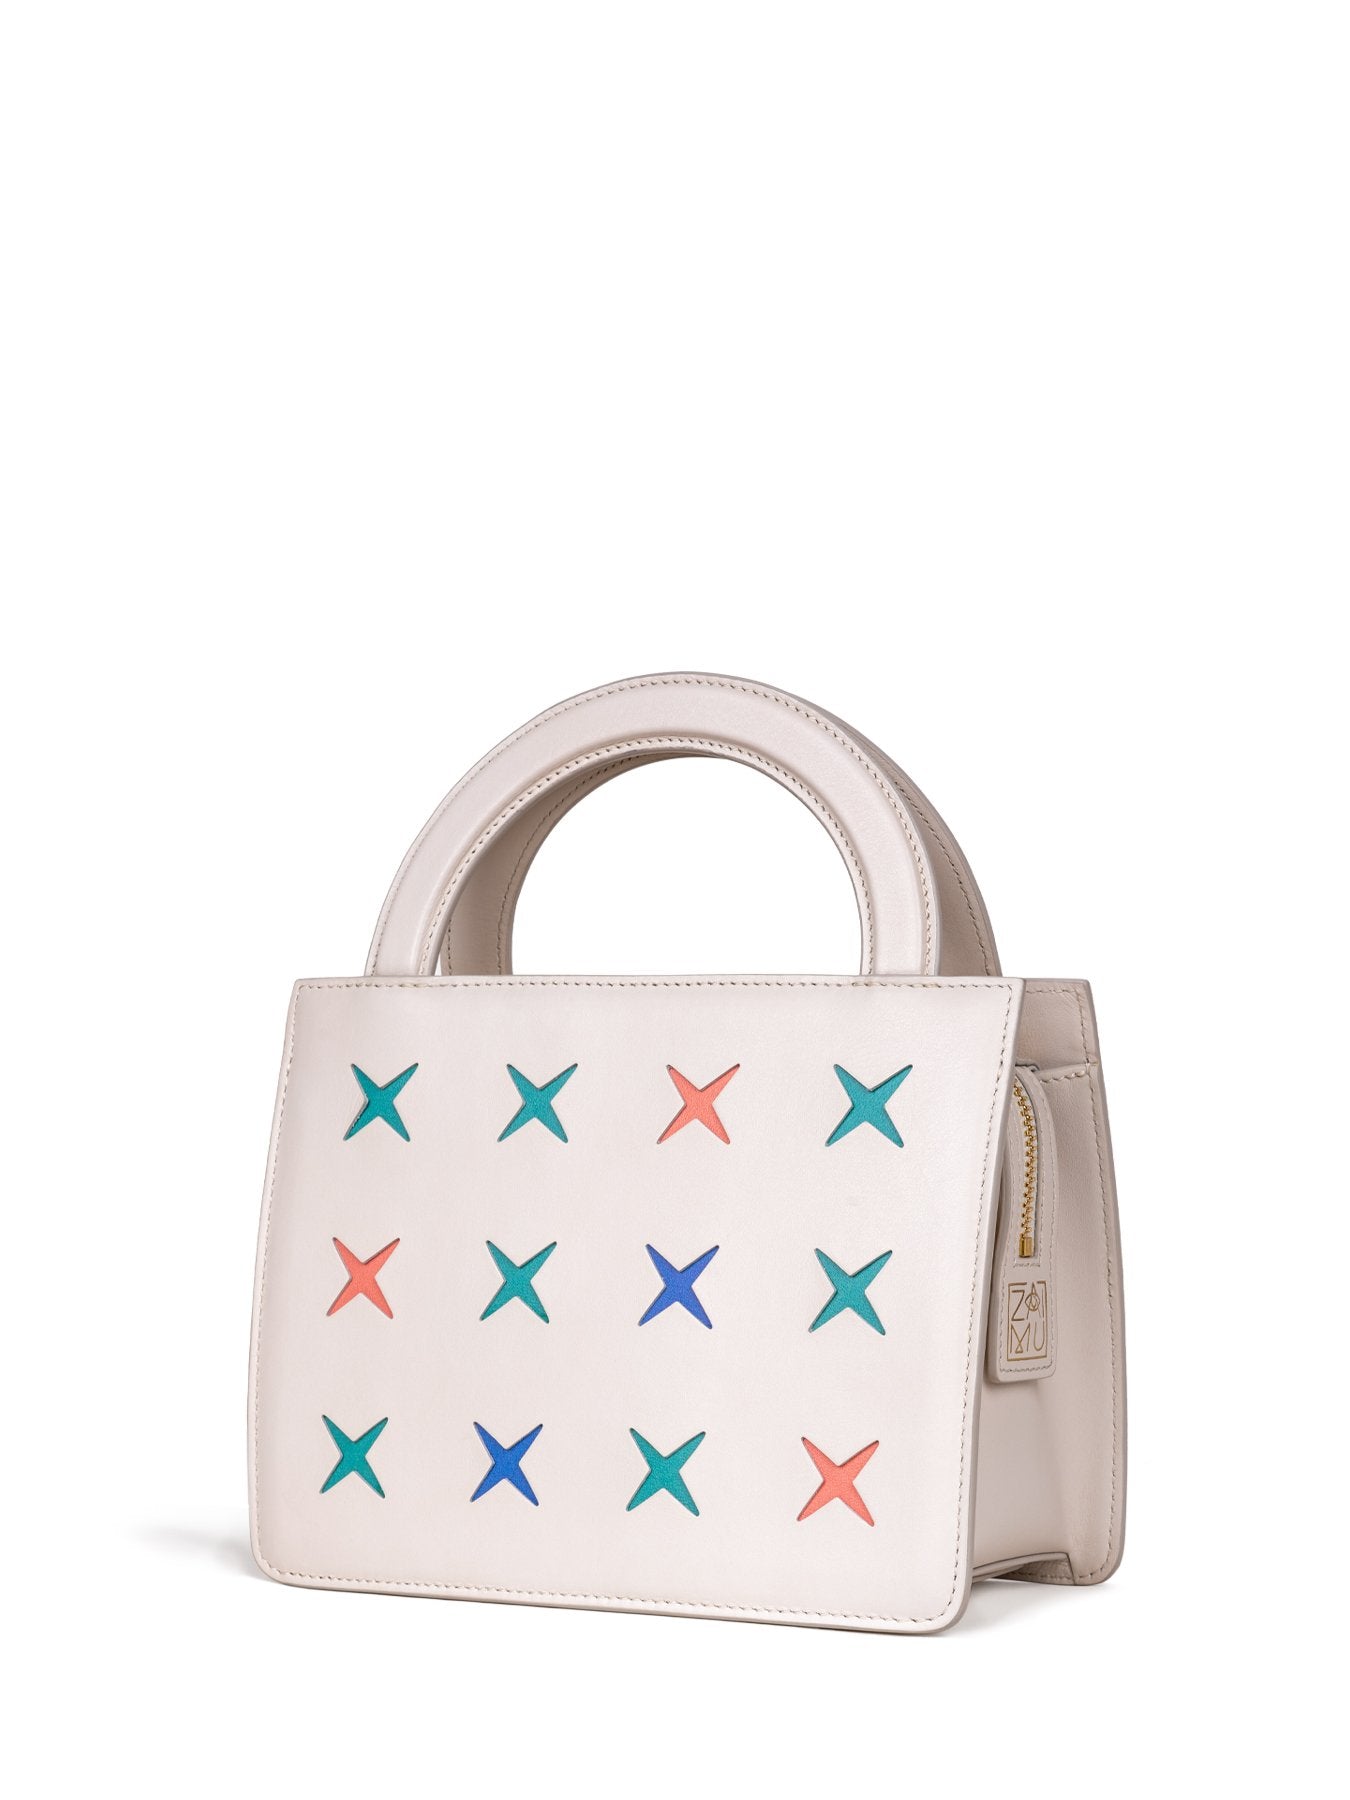 chic niche design handbag in vanilla